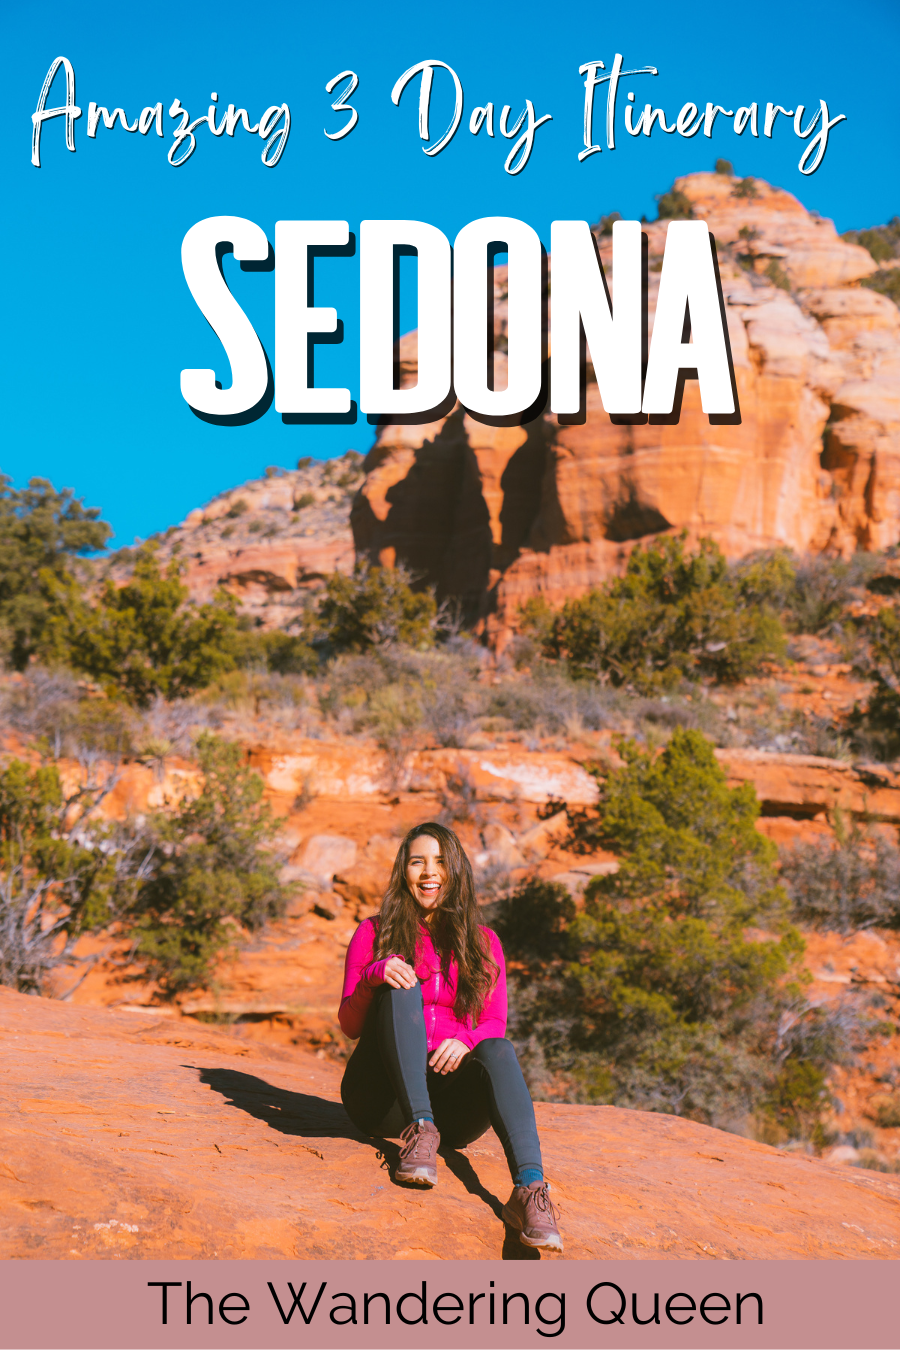 sedona arizona trip itinerary